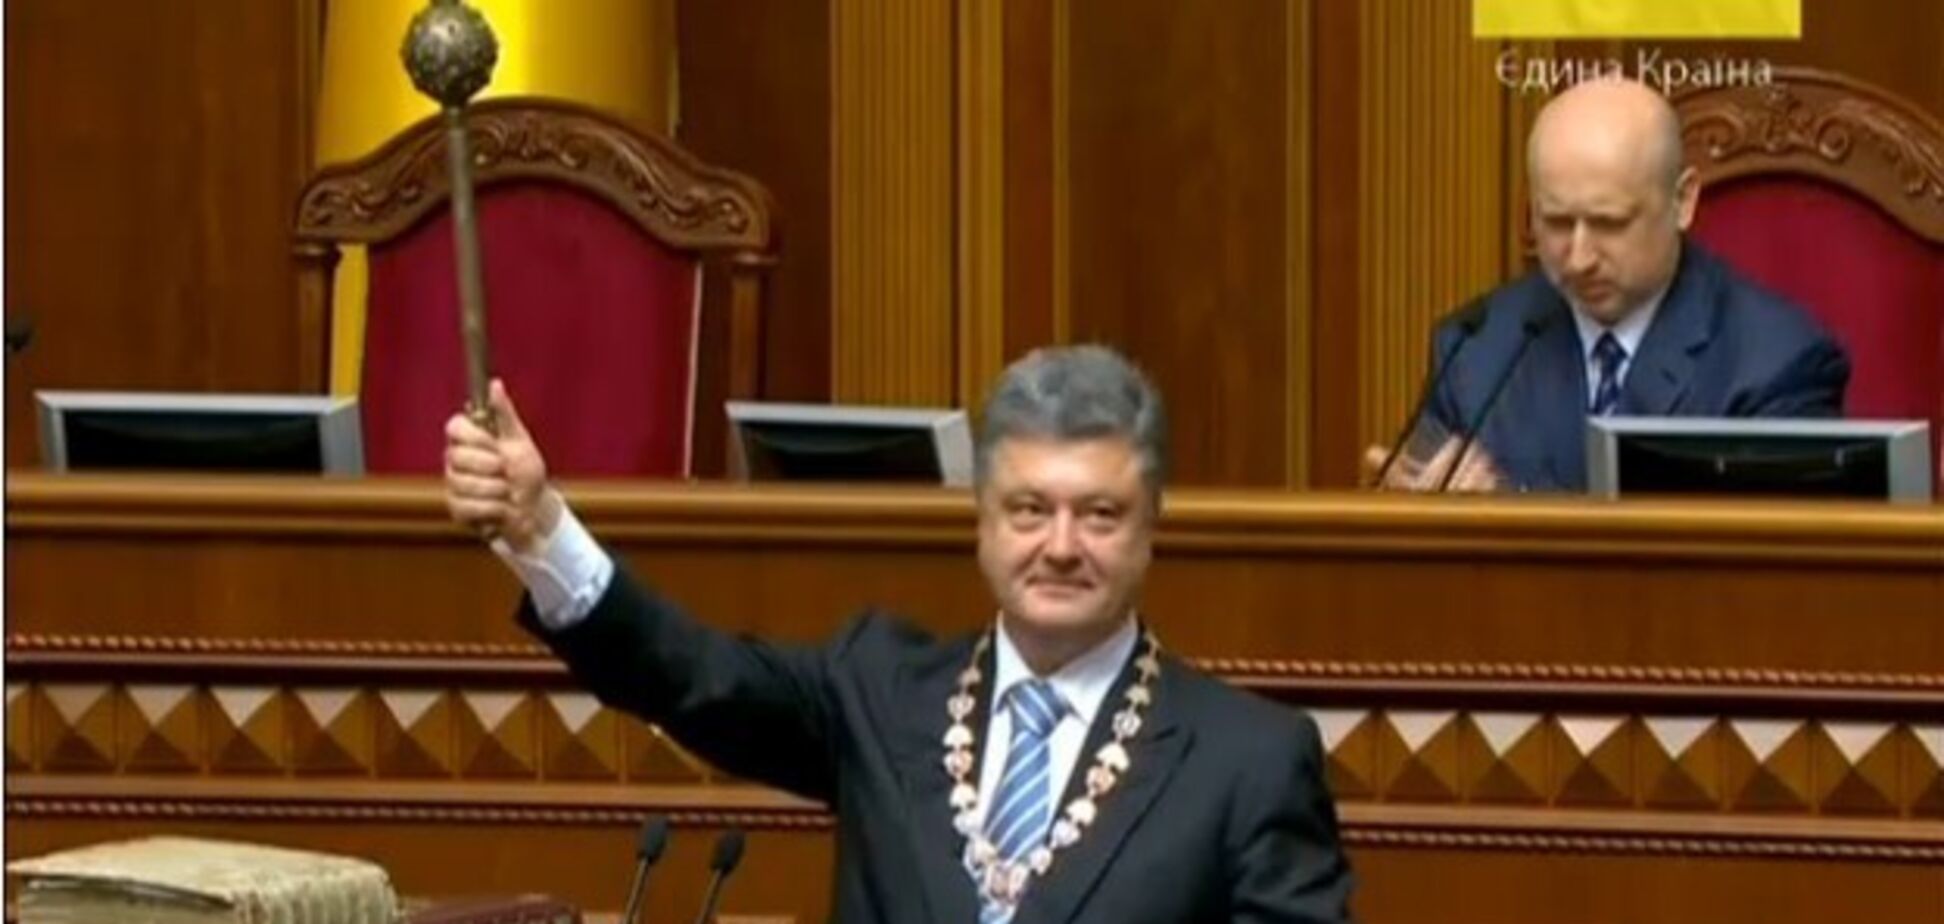 Закон не допоможе: названо причину, чому в Україні неможливий імпічмент президенту